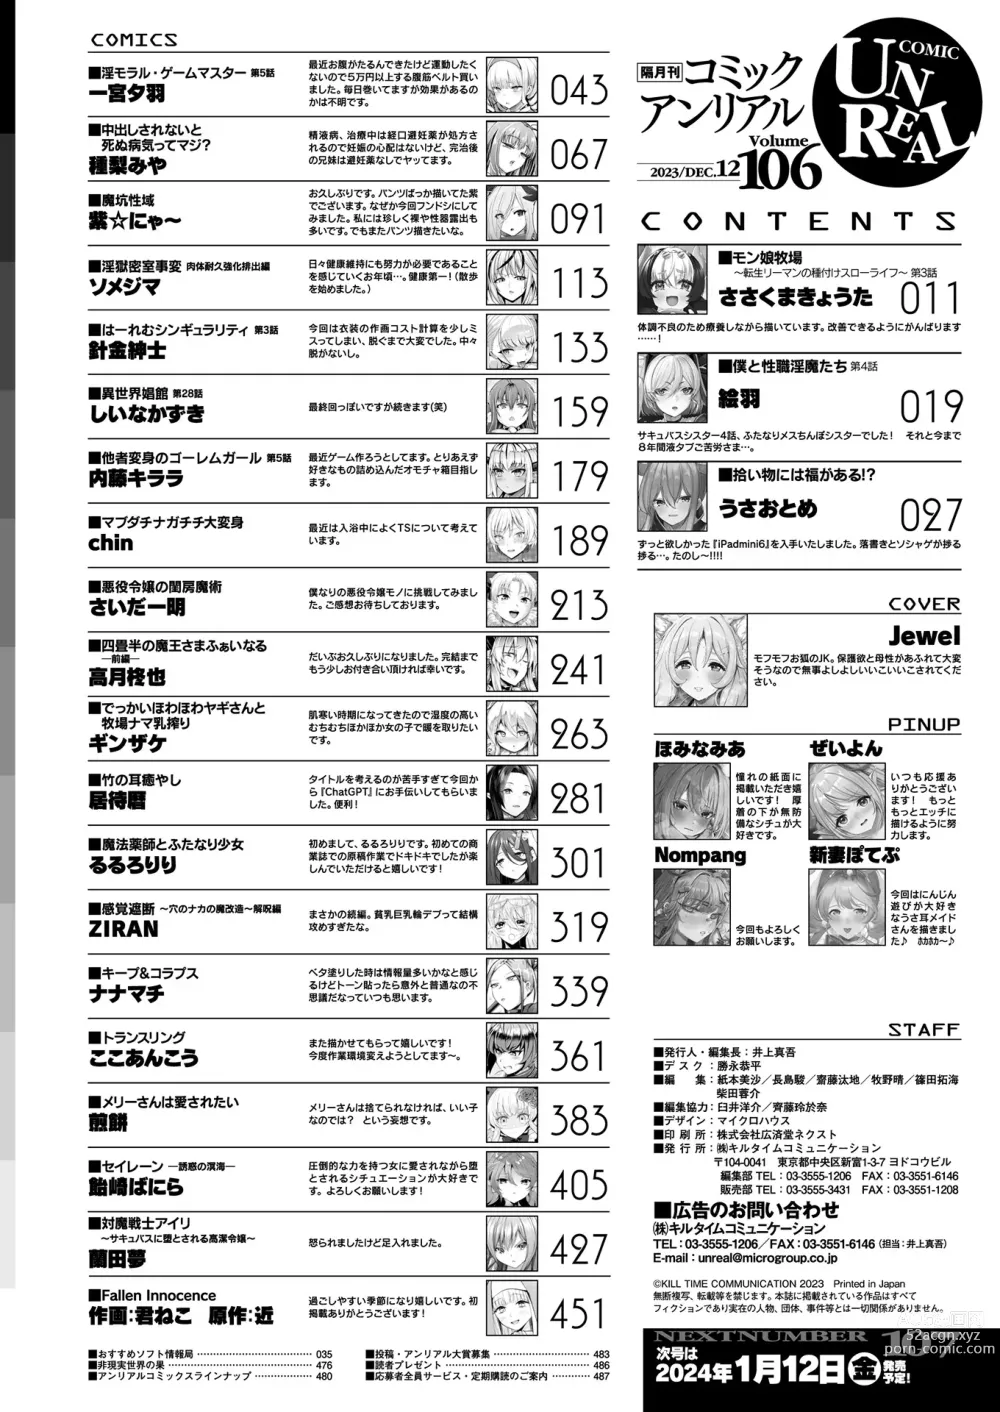 Page 482 of manga COMIC Unreal 2023-12 Vol. 106